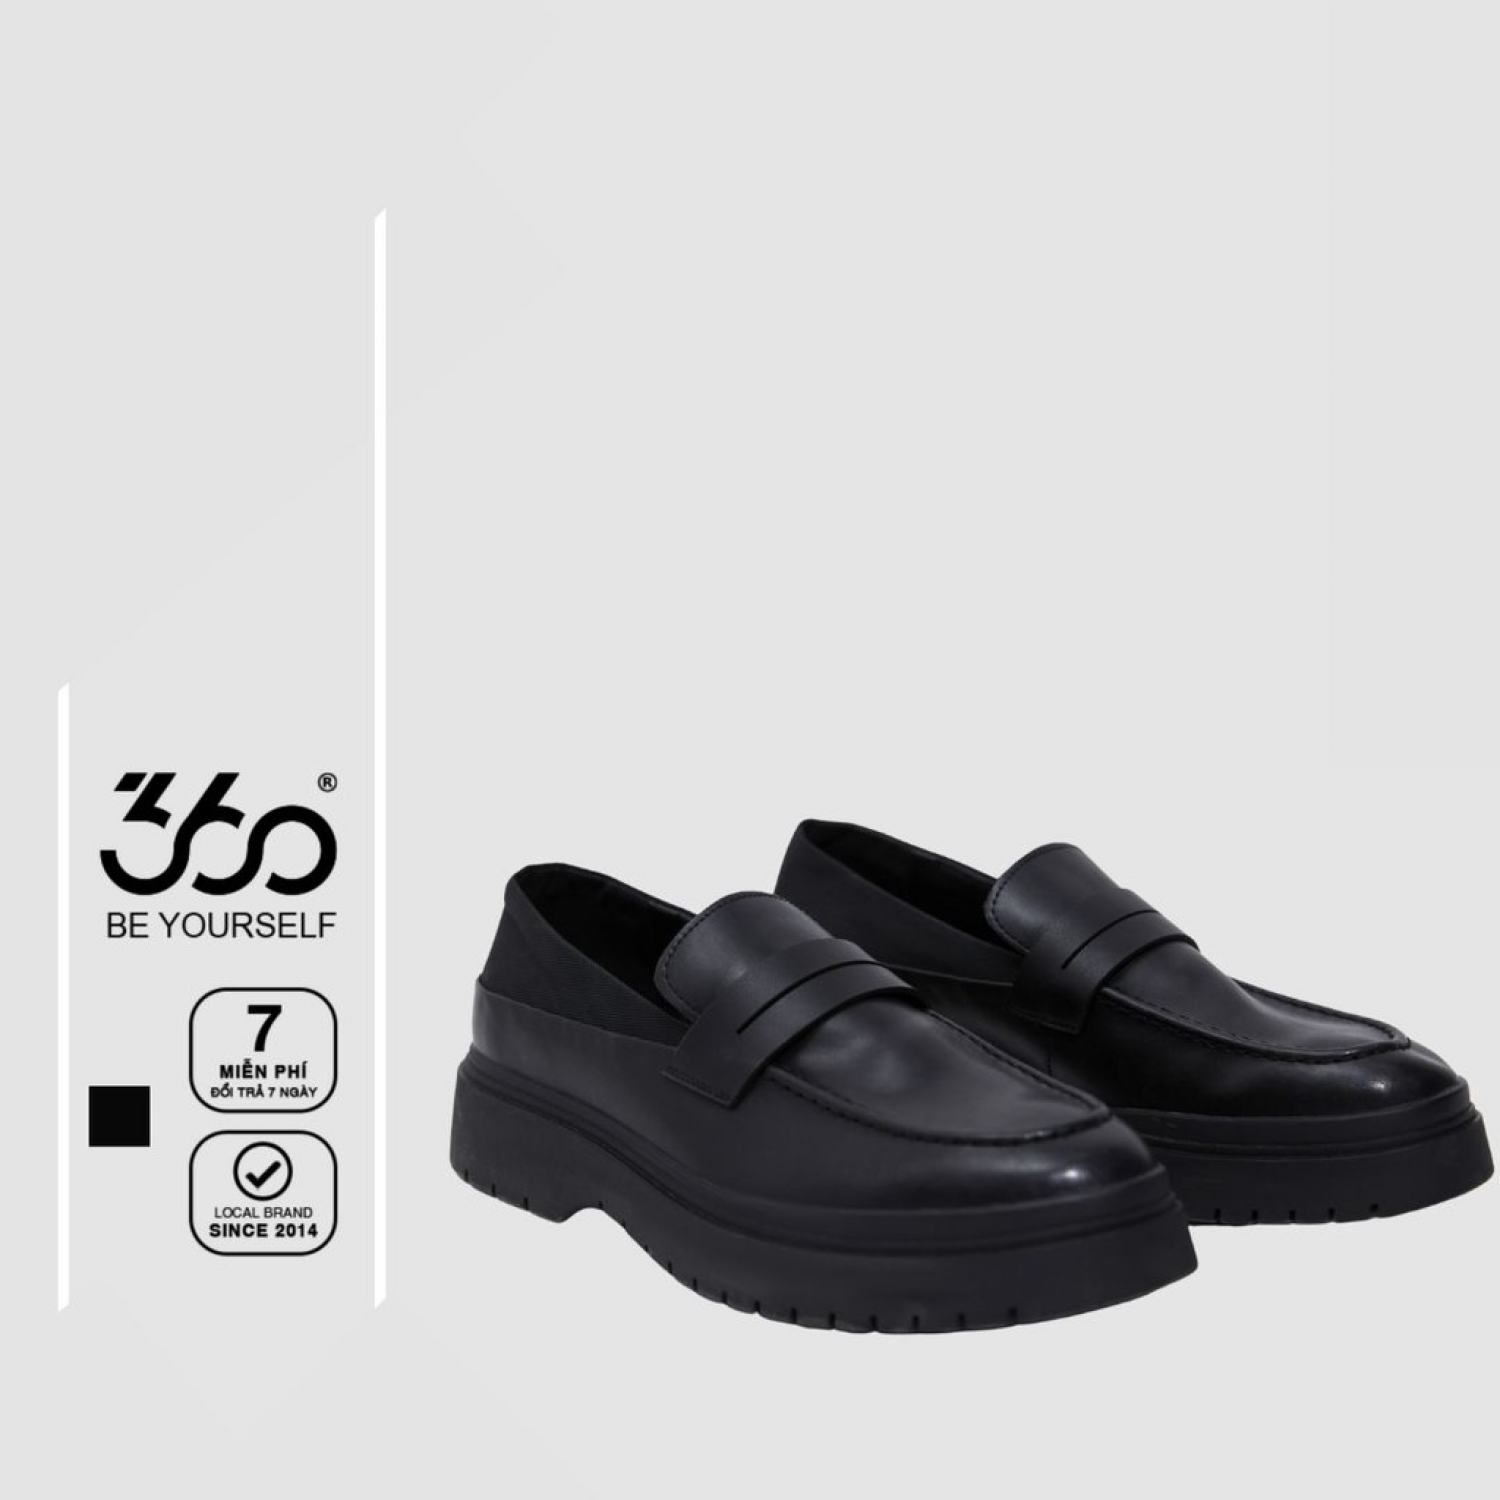 Giày lười Penny Loafer nam thương hiệu 360 Boutique chất liệu da cao cấp